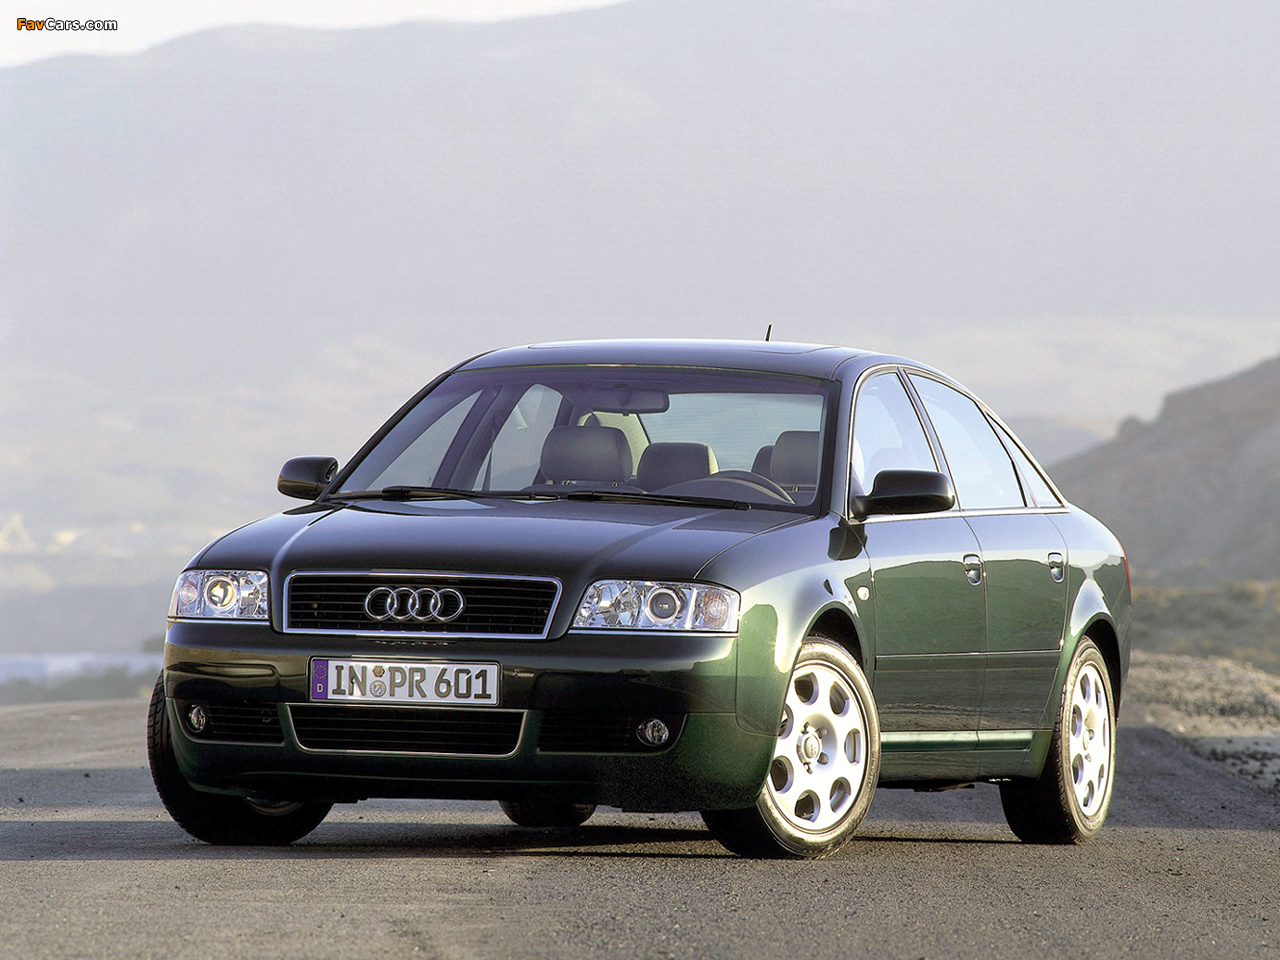 6 c 04. Audi a6 c5. Audi a6 c5 1997. Audi a6 [c5] 1997-2004. Audi a6 c5 седан.